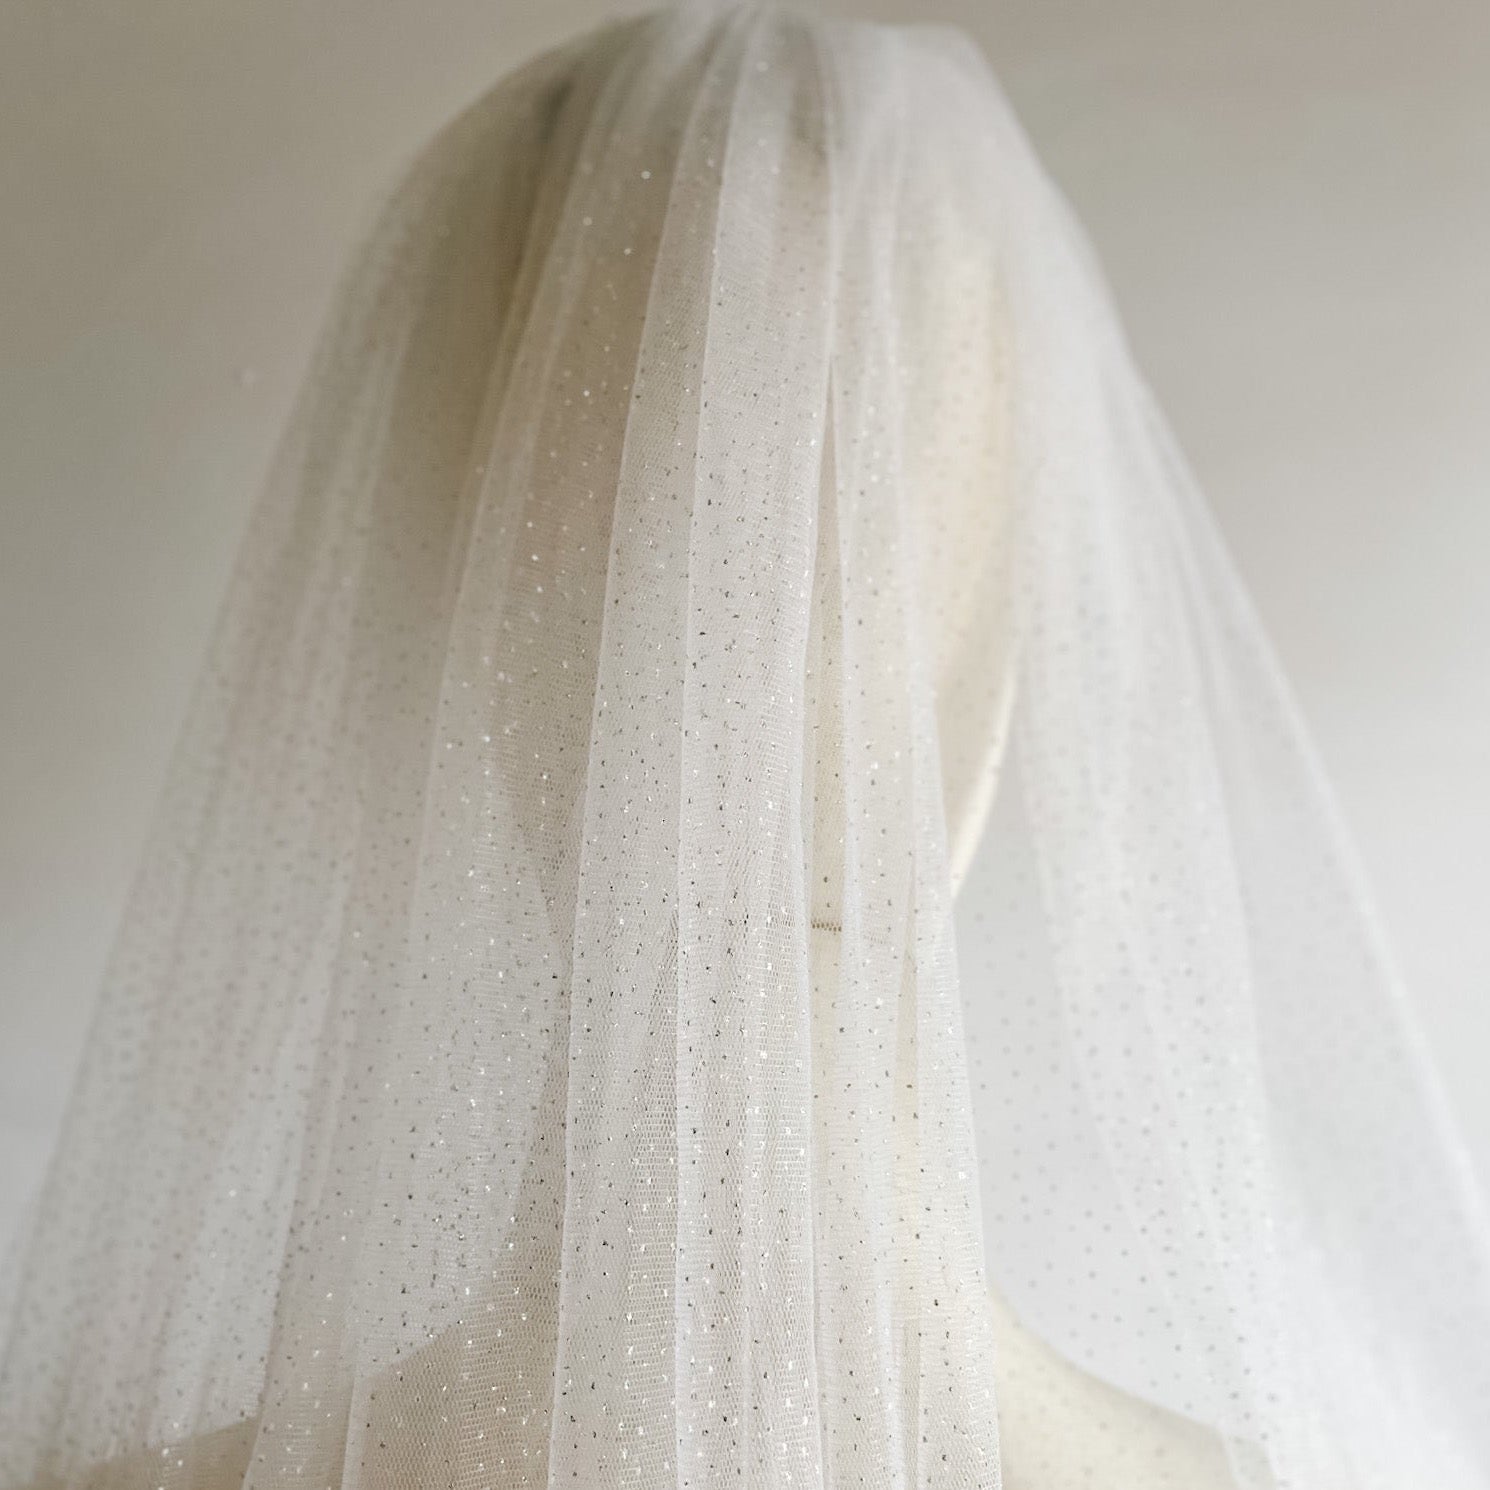 White Glitter Bride Wedding Veil, Cathedral, Chapel, Fingertips, Knee, Shoulder.